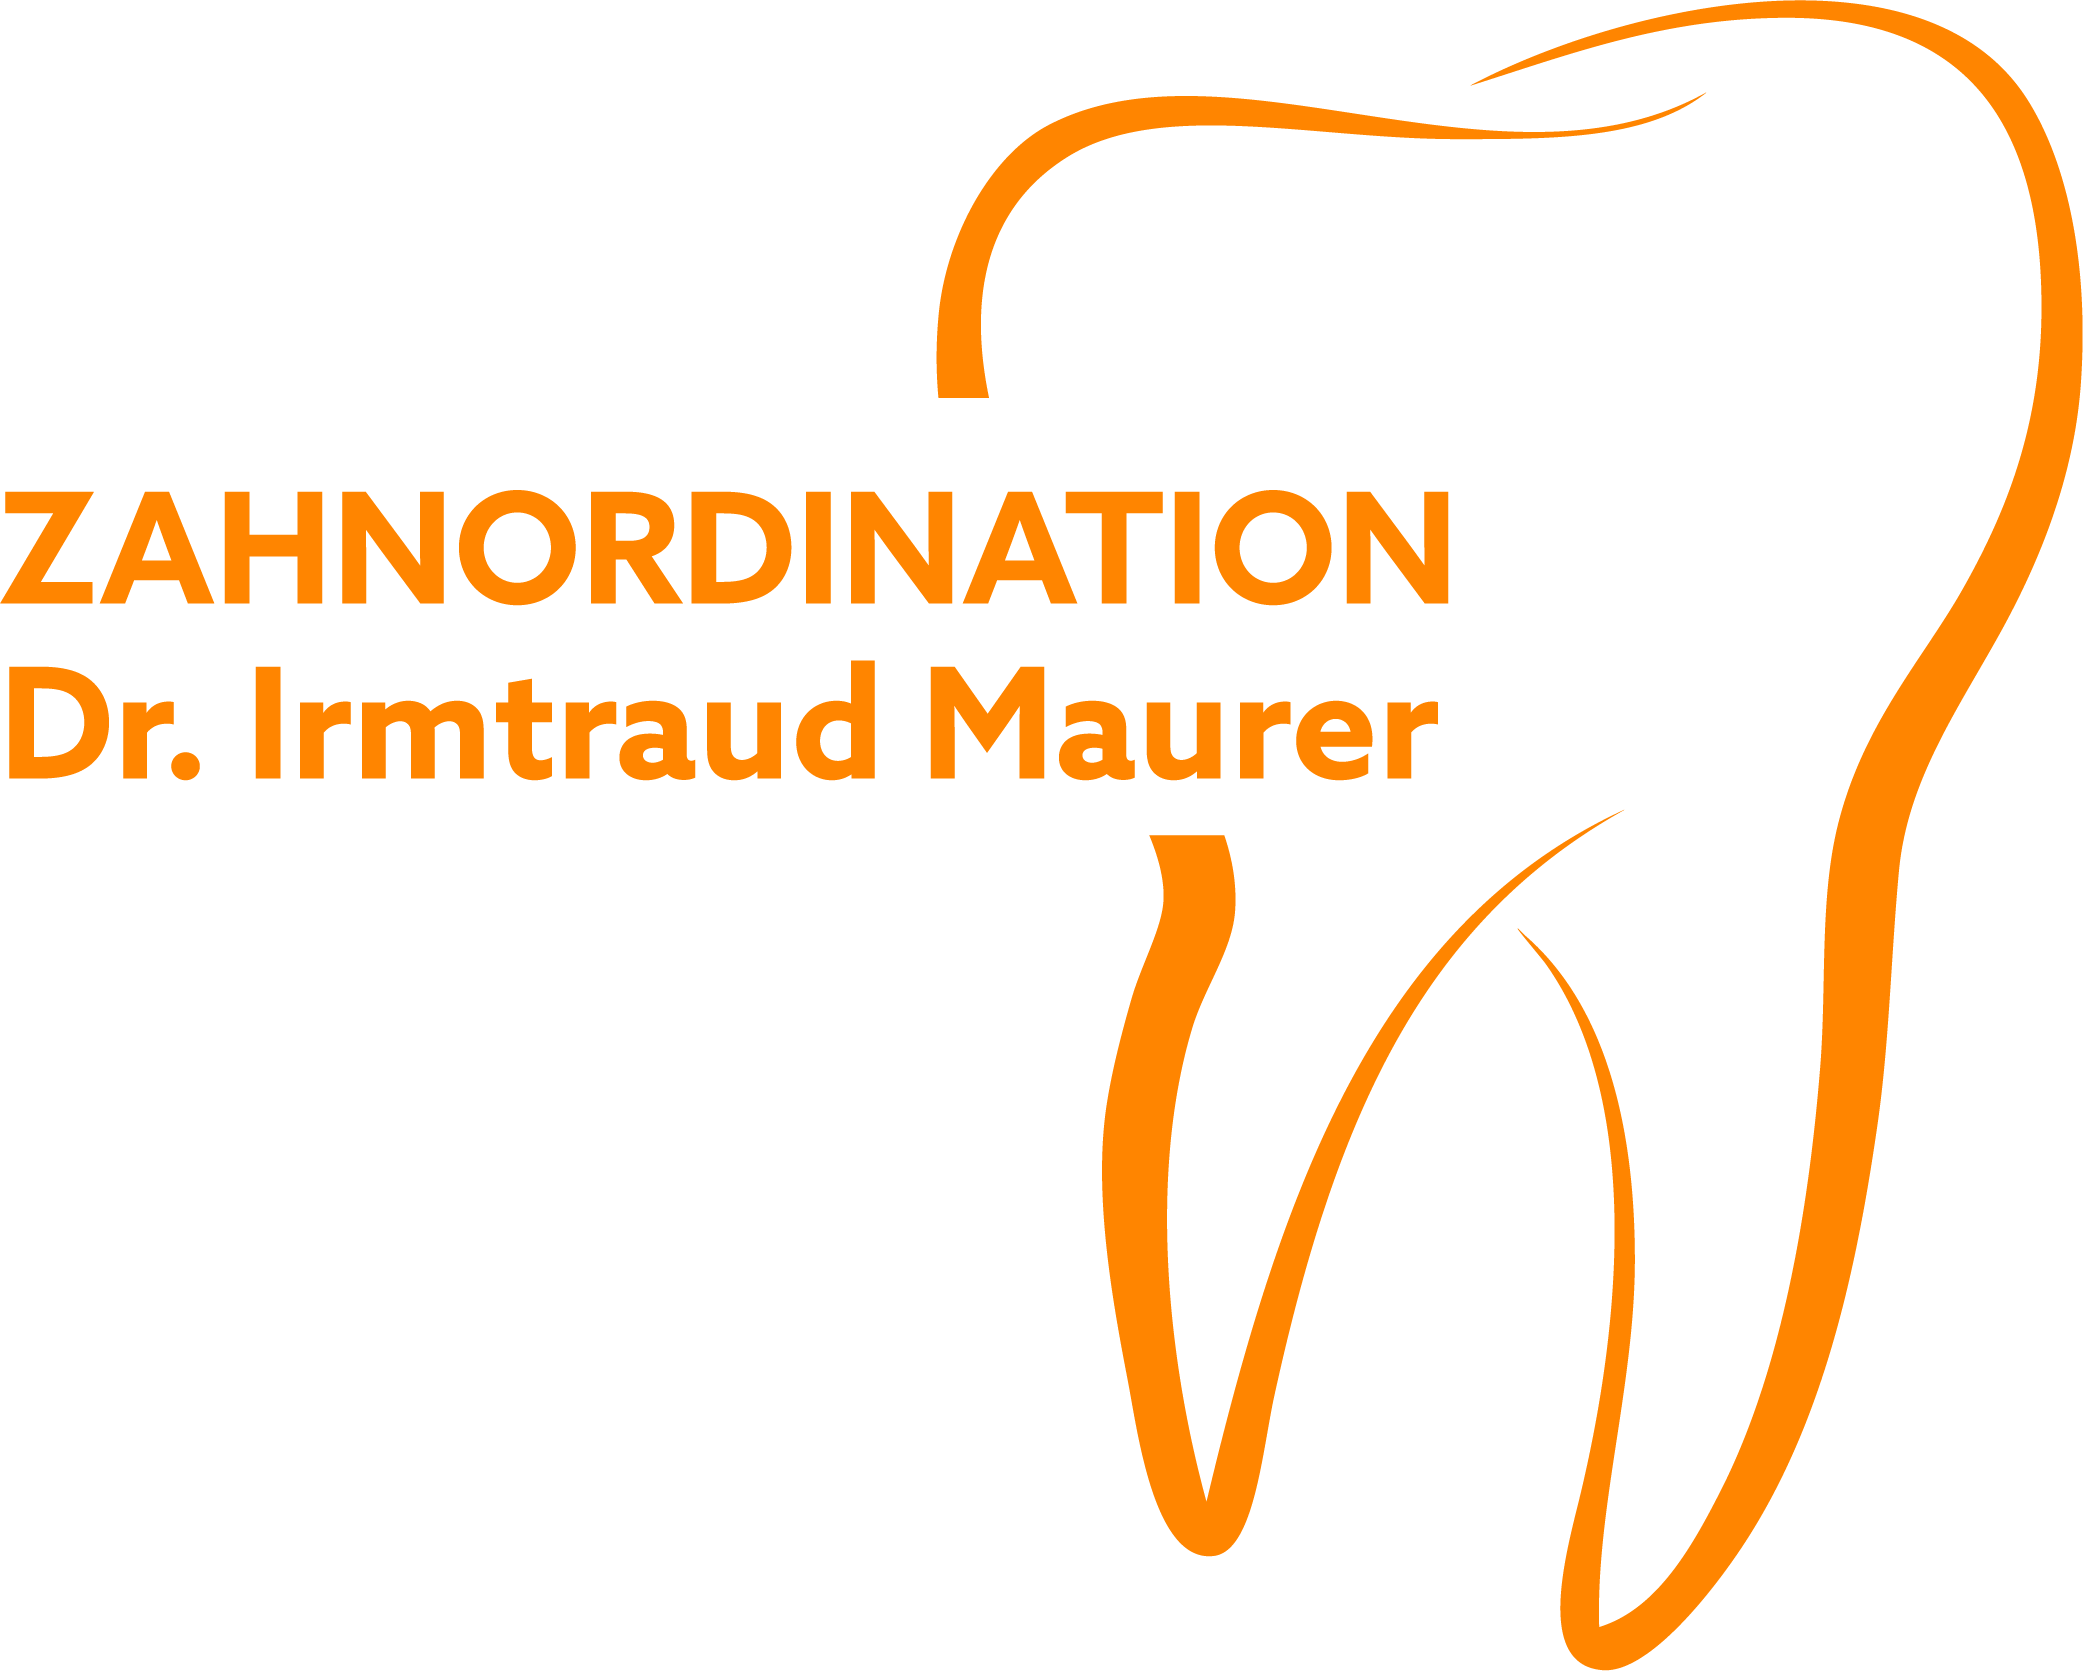 Dr. Imrtraud Maurer